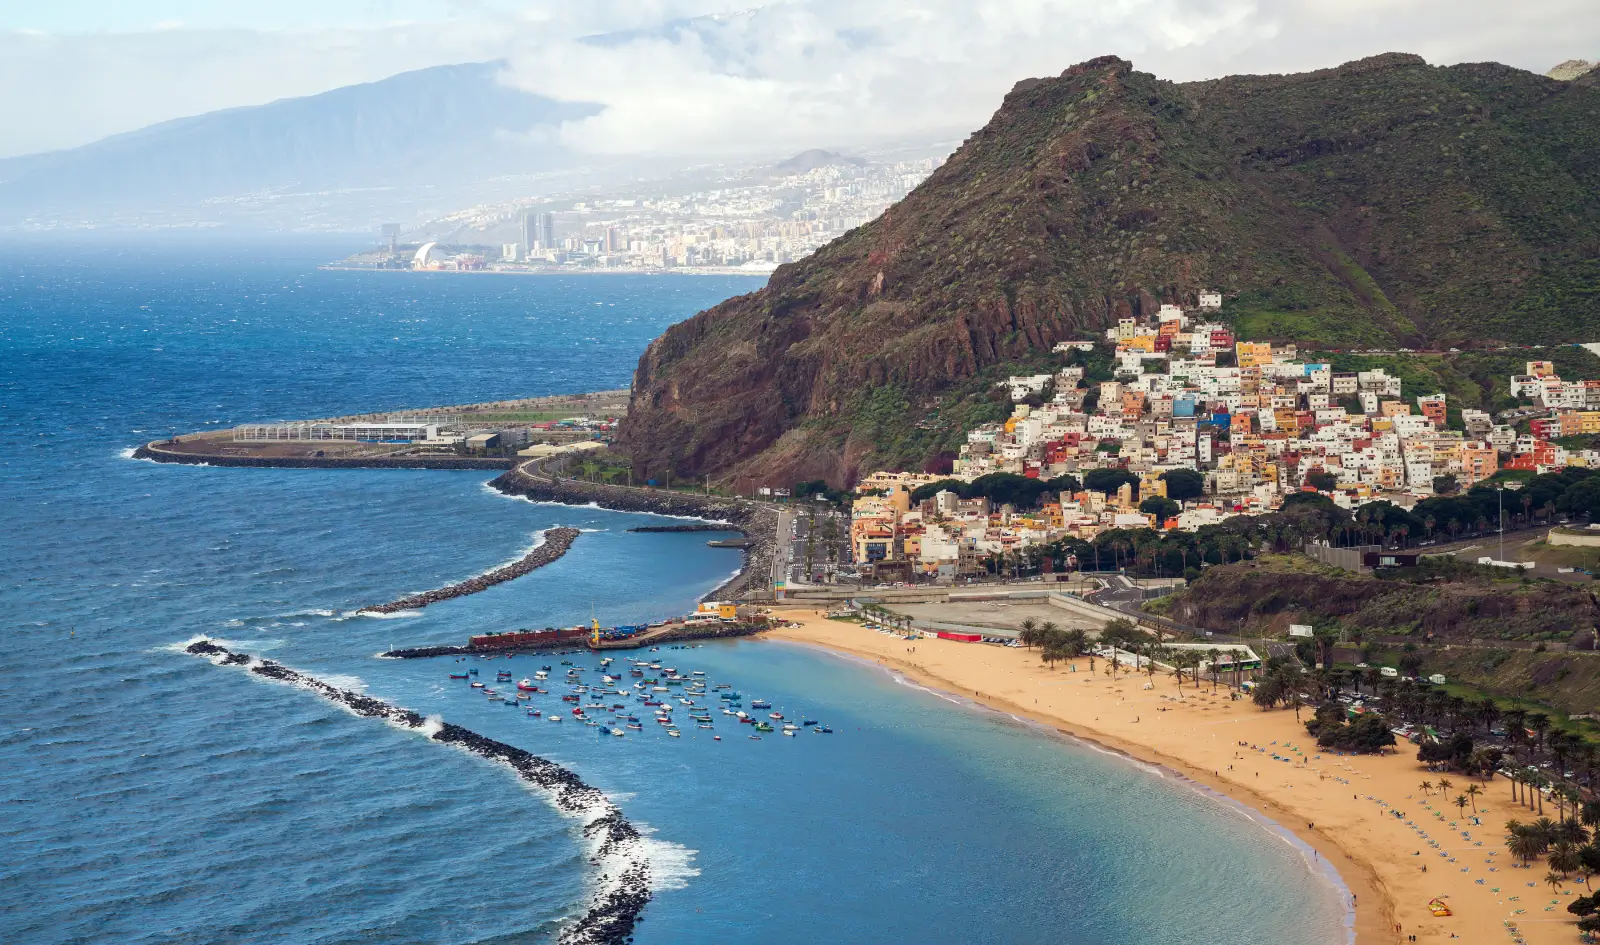 Wat te doen in Tenerife? Bezoek een van de mooie stranden!